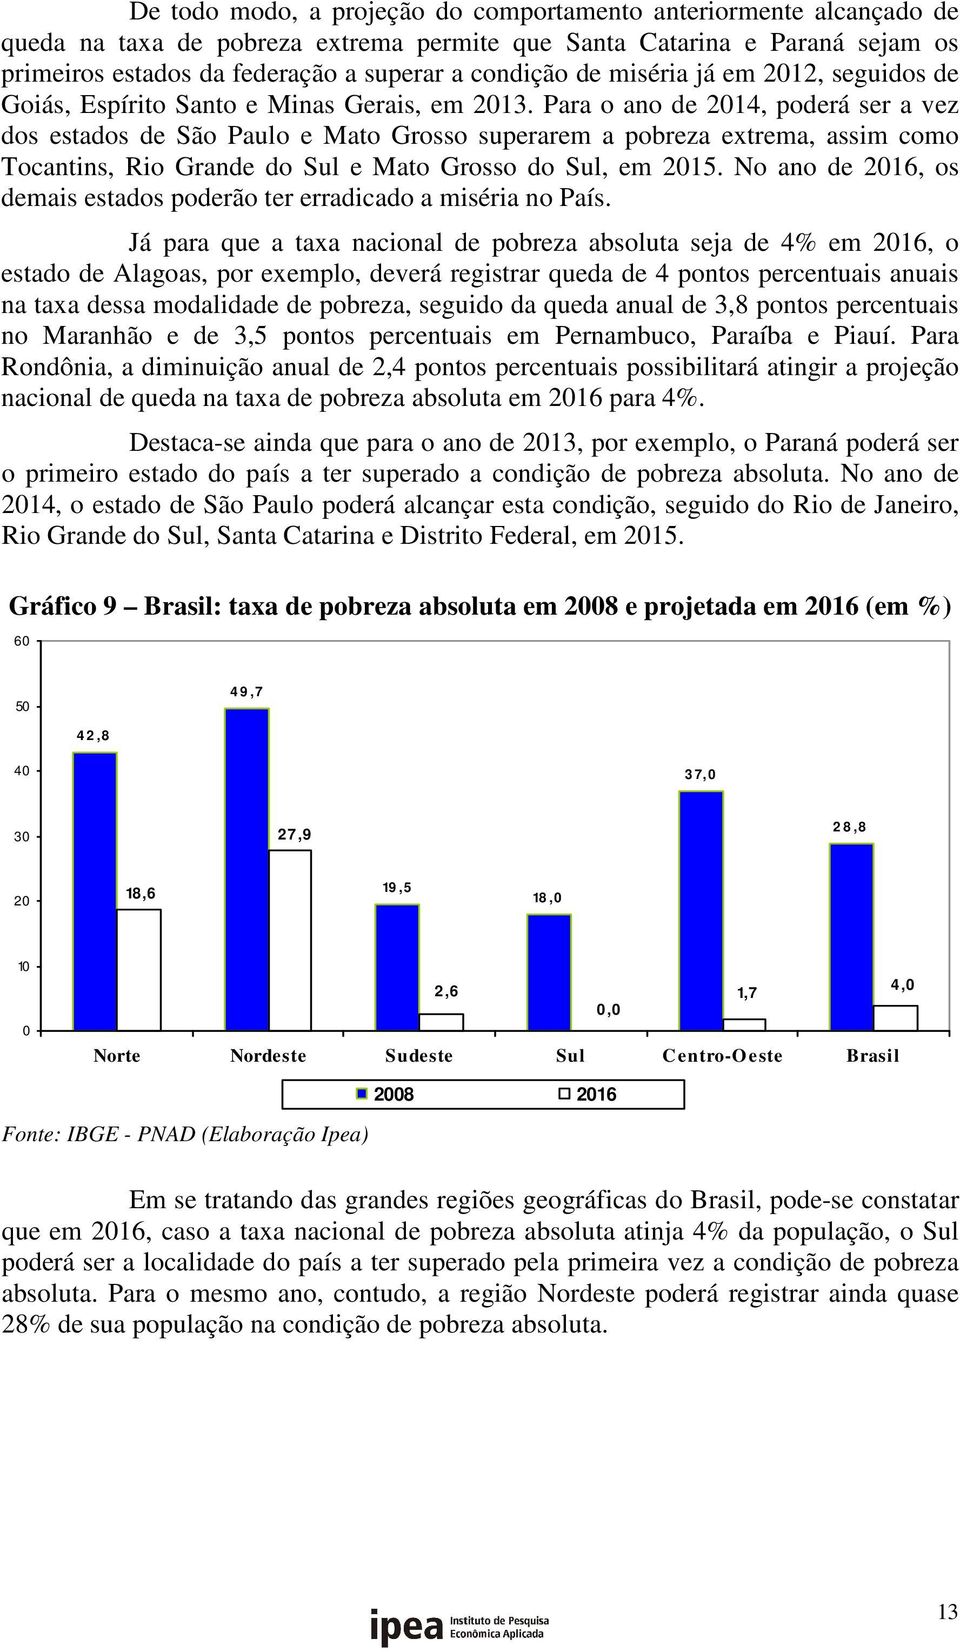 Para o ano de 2014, poderá ser a vez dos estados de São Paulo e Mato Grosso superarem a pobreza extrema, assim como Tocantins, Rio Grande do Sul e Mato Grosso do Sul, em 2015.